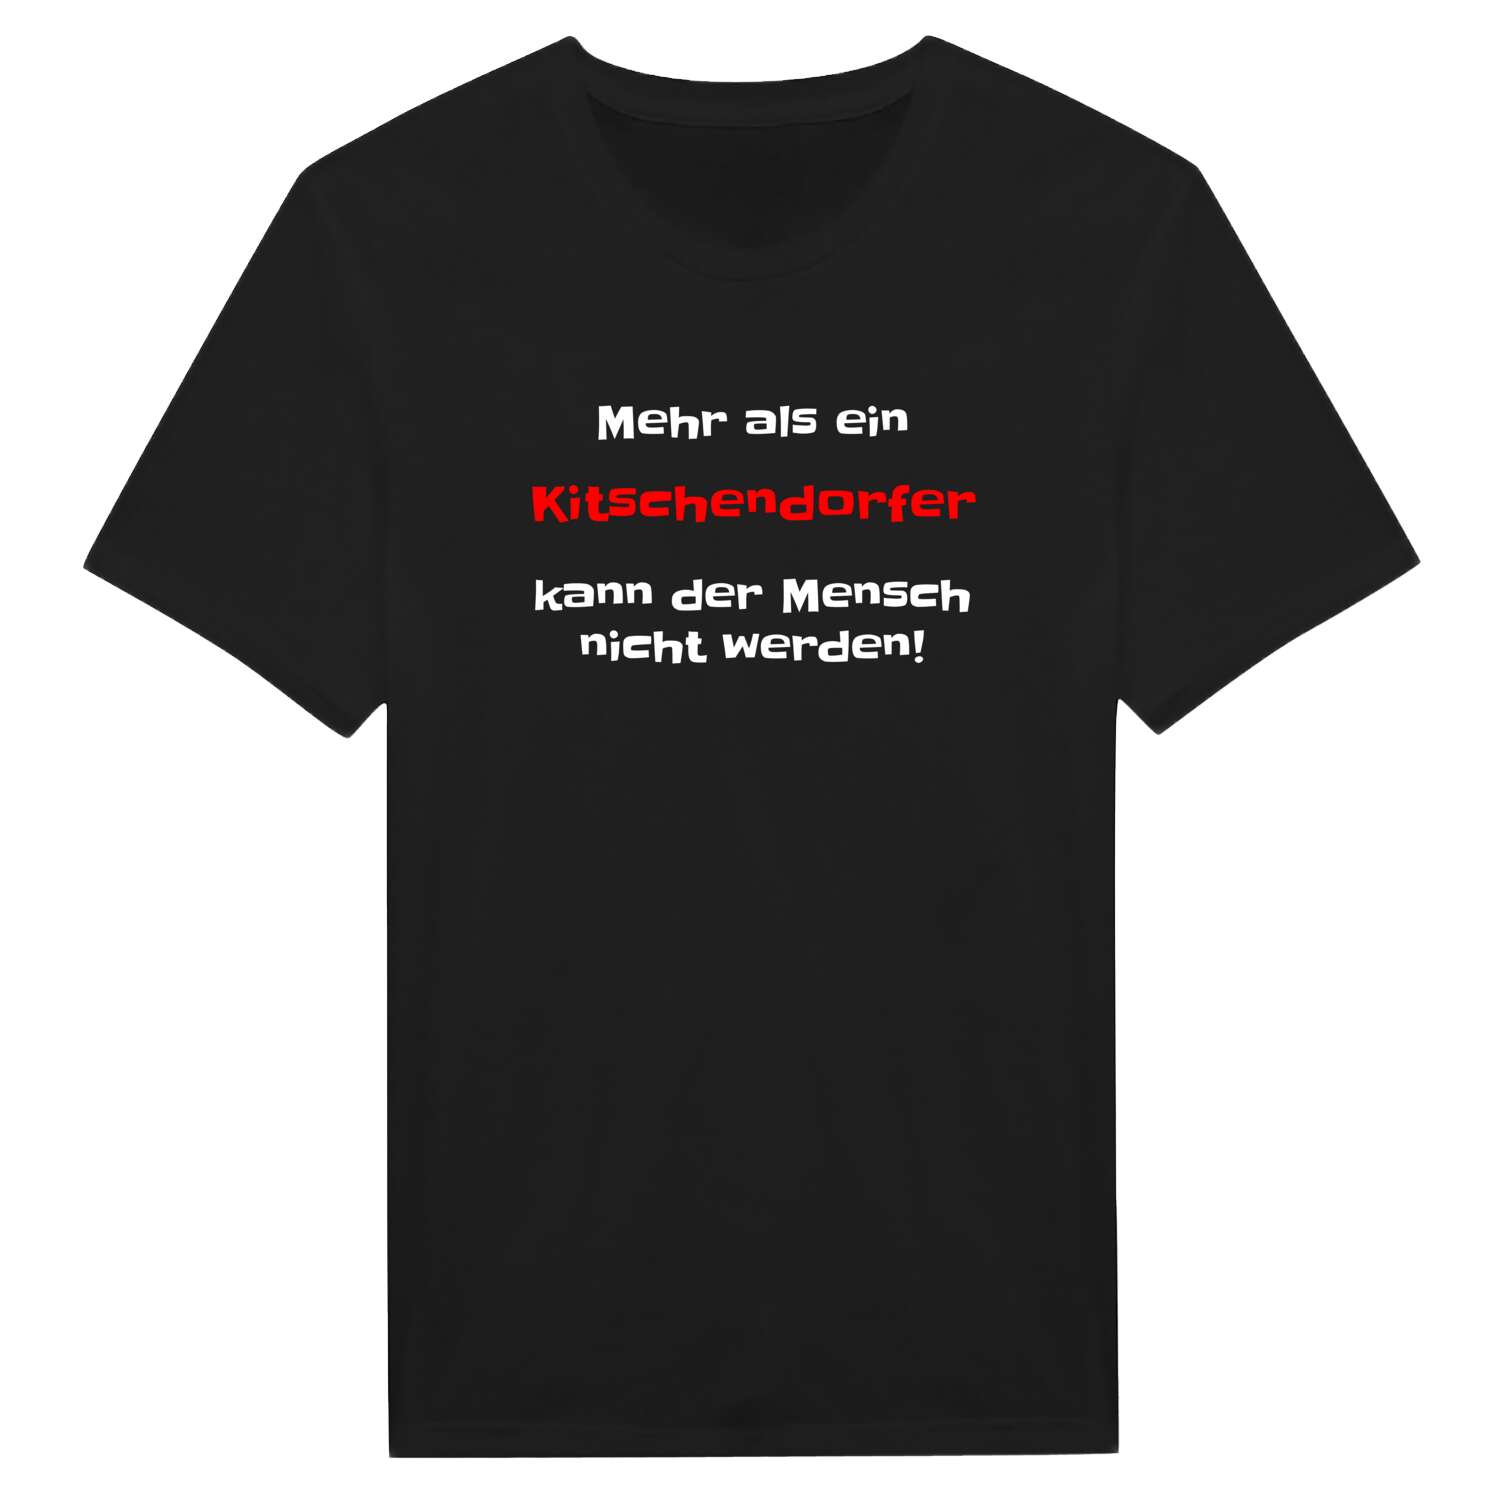 Kitschendorf T-Shirt »Mehr als ein«